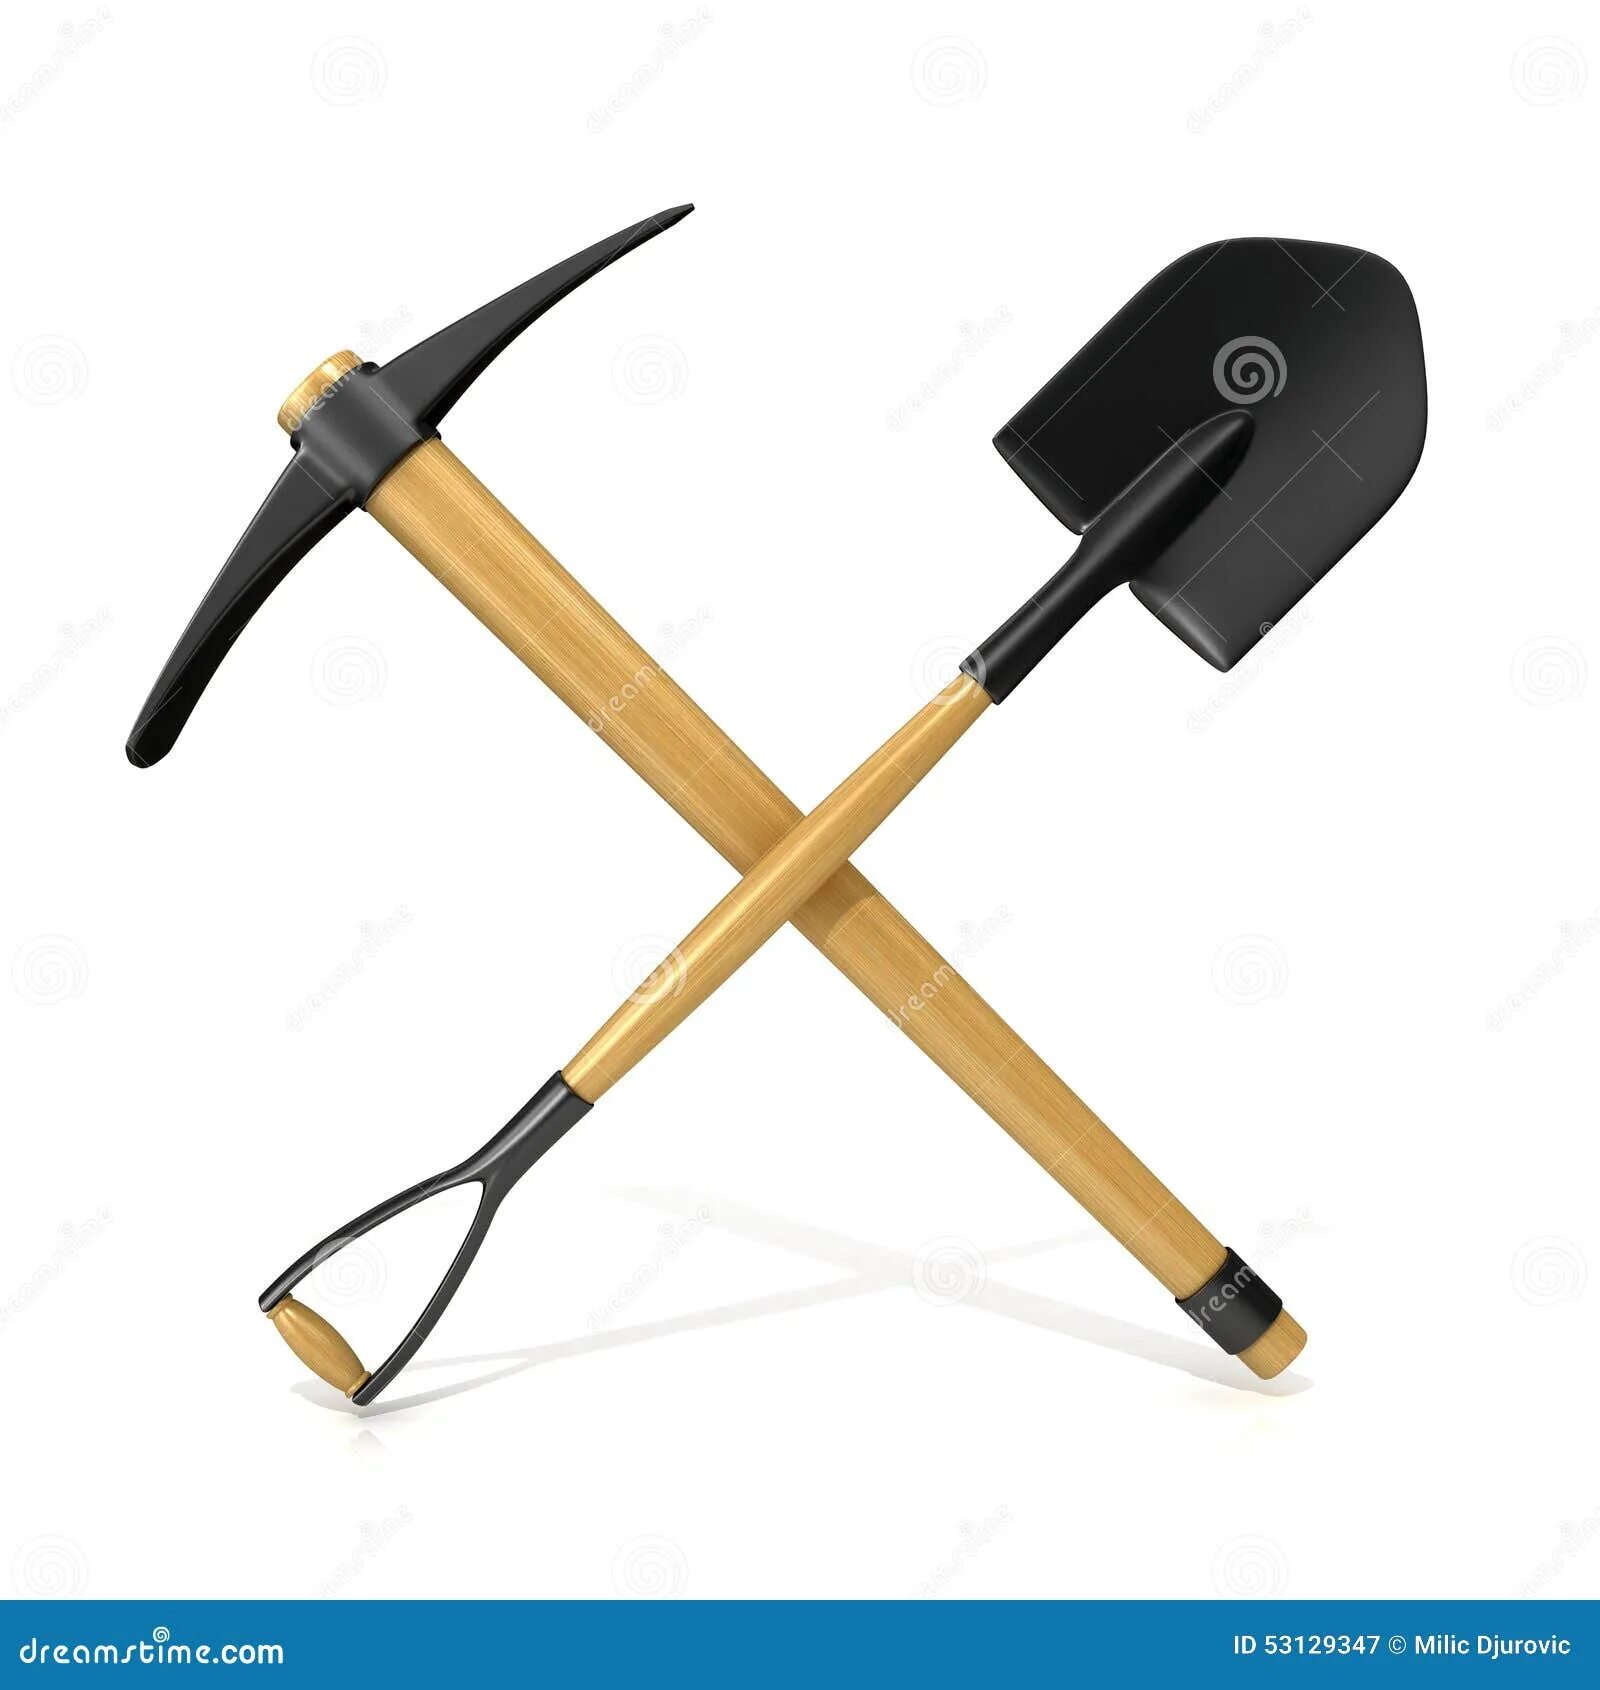 Mining tool. Кирка и лопата. Инструменты Шахтера. Скрещенные кирка и лопата. Перекрещенные лопата и кирка.